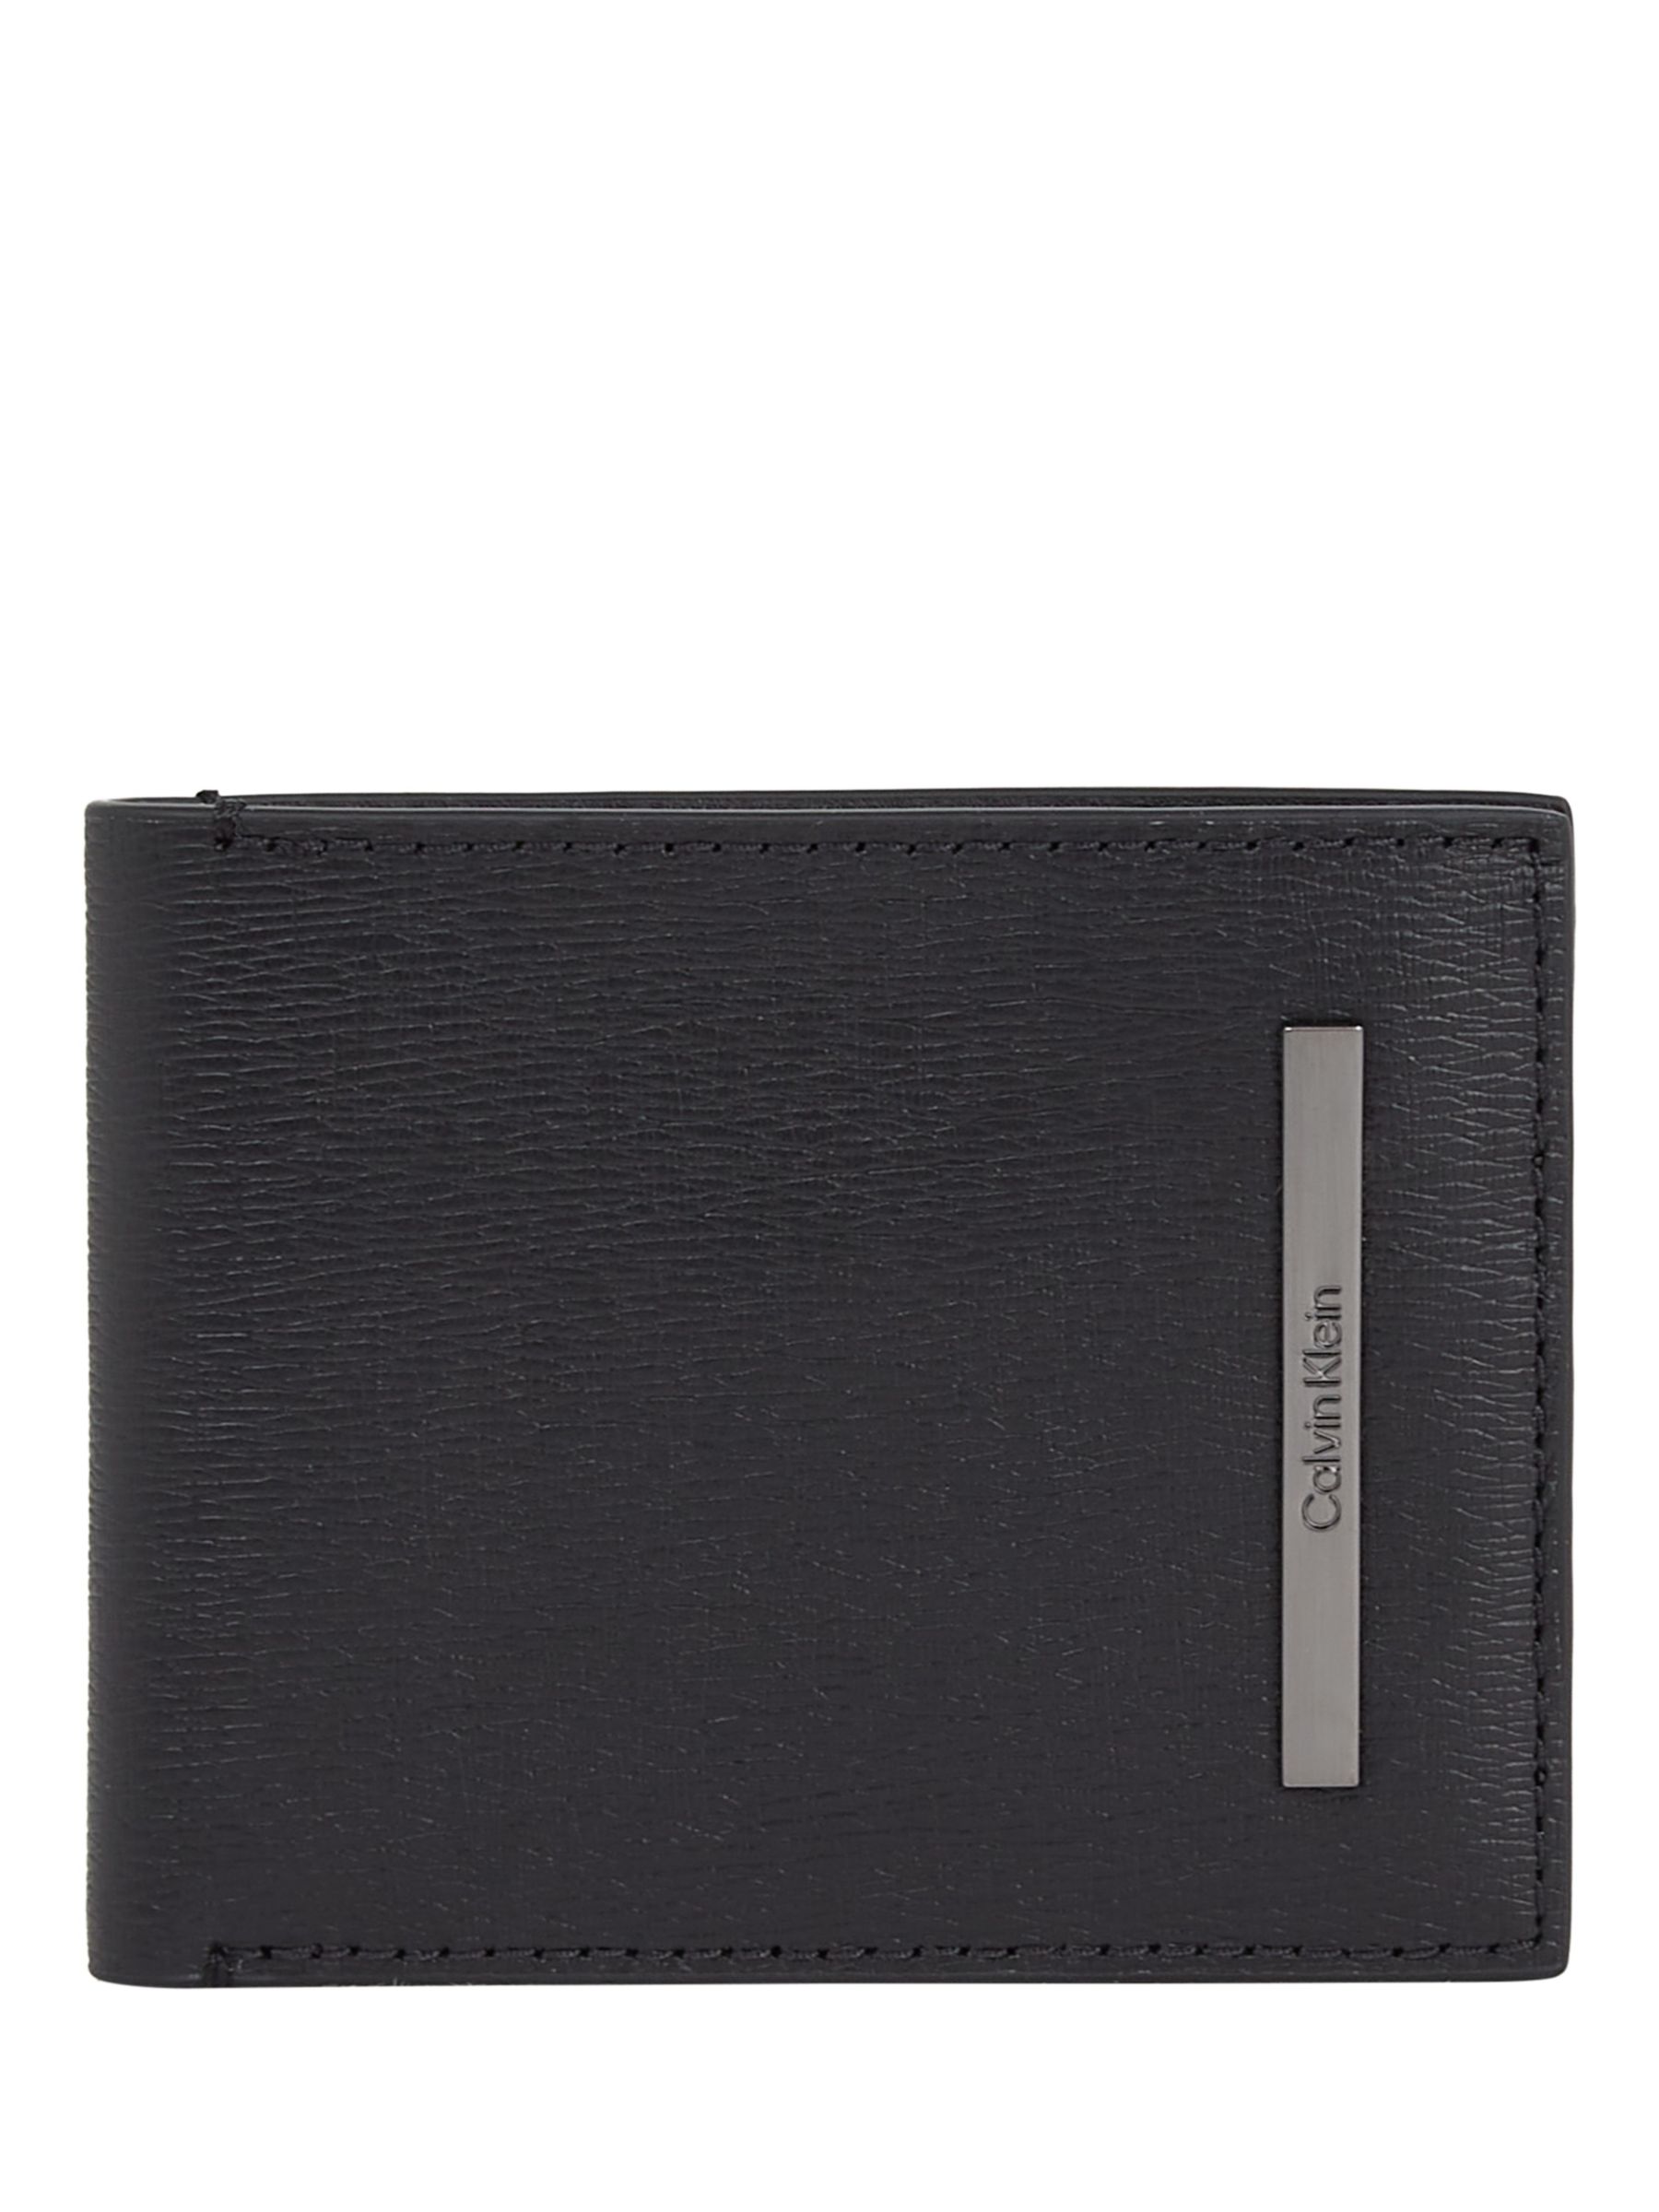 Calvin Klein Slim RFID Leather Bifold Wallet, Black at John Lewis ...